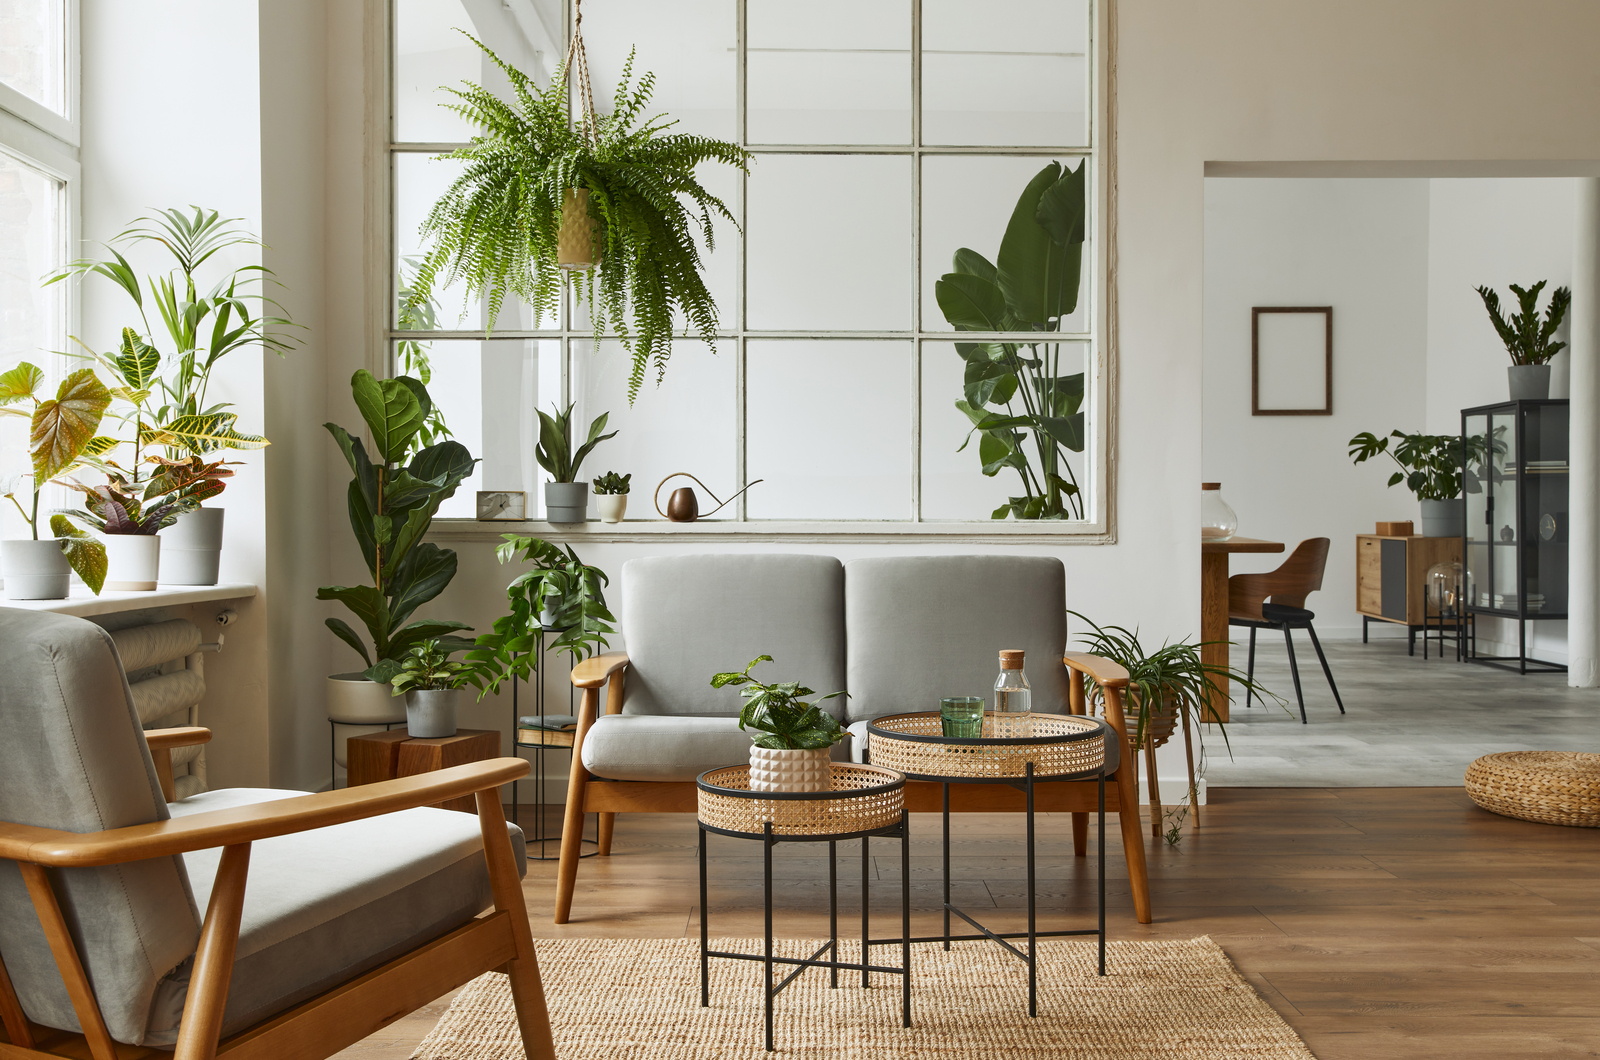 livingroom full of indoor plants